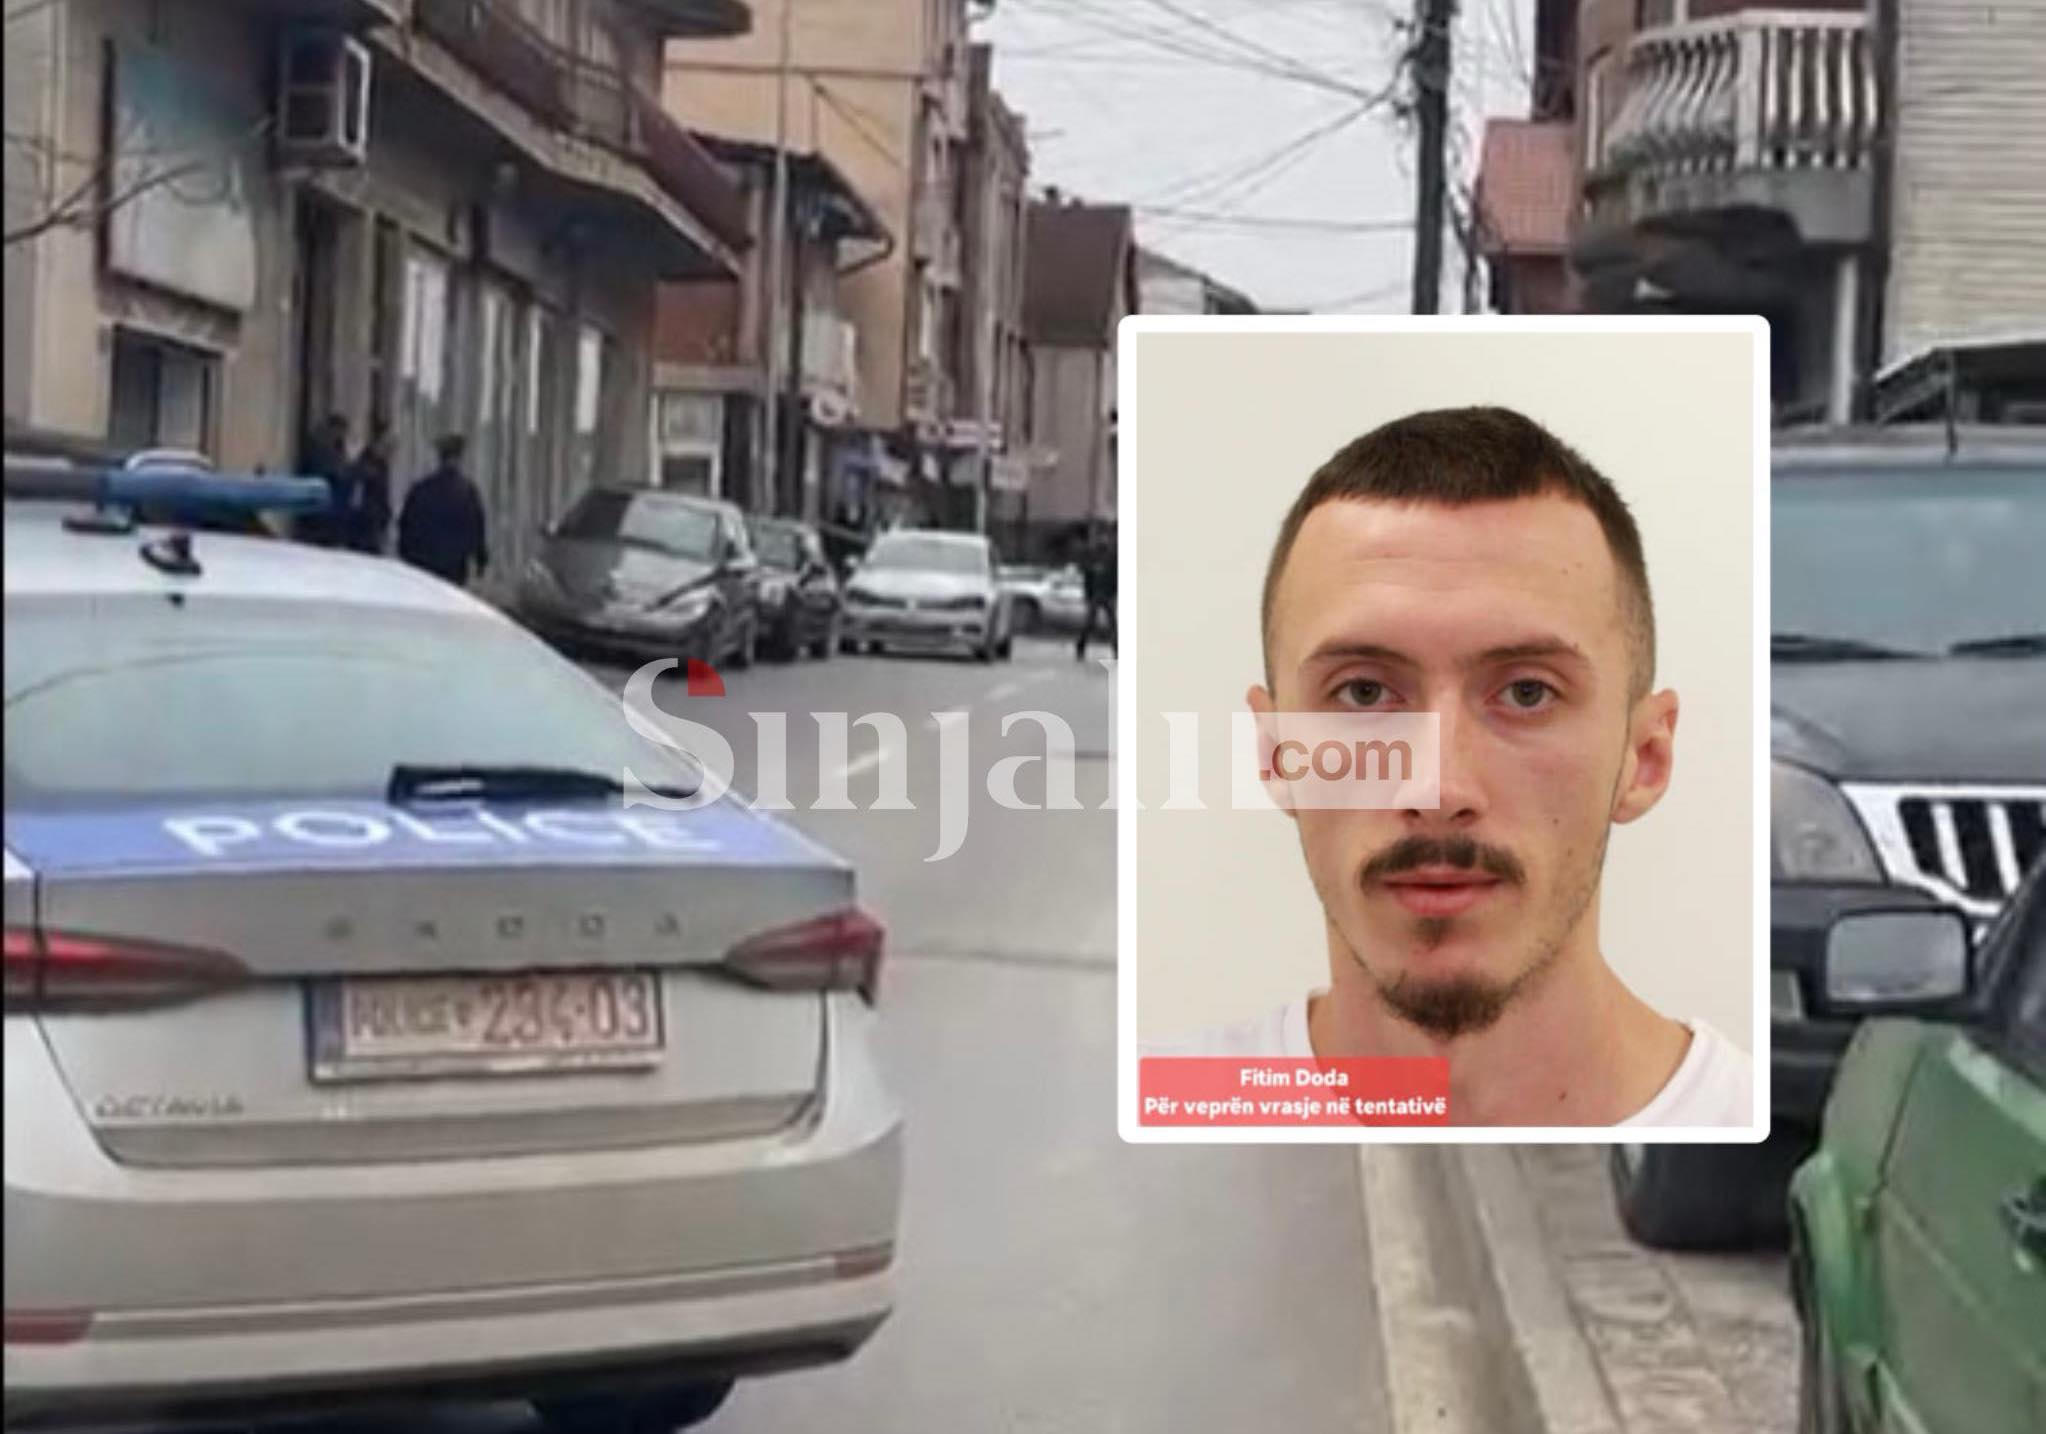 Dorëzohet në Polici Fitim Doda   i dyshuari për tentim vras jen në Kolovicë